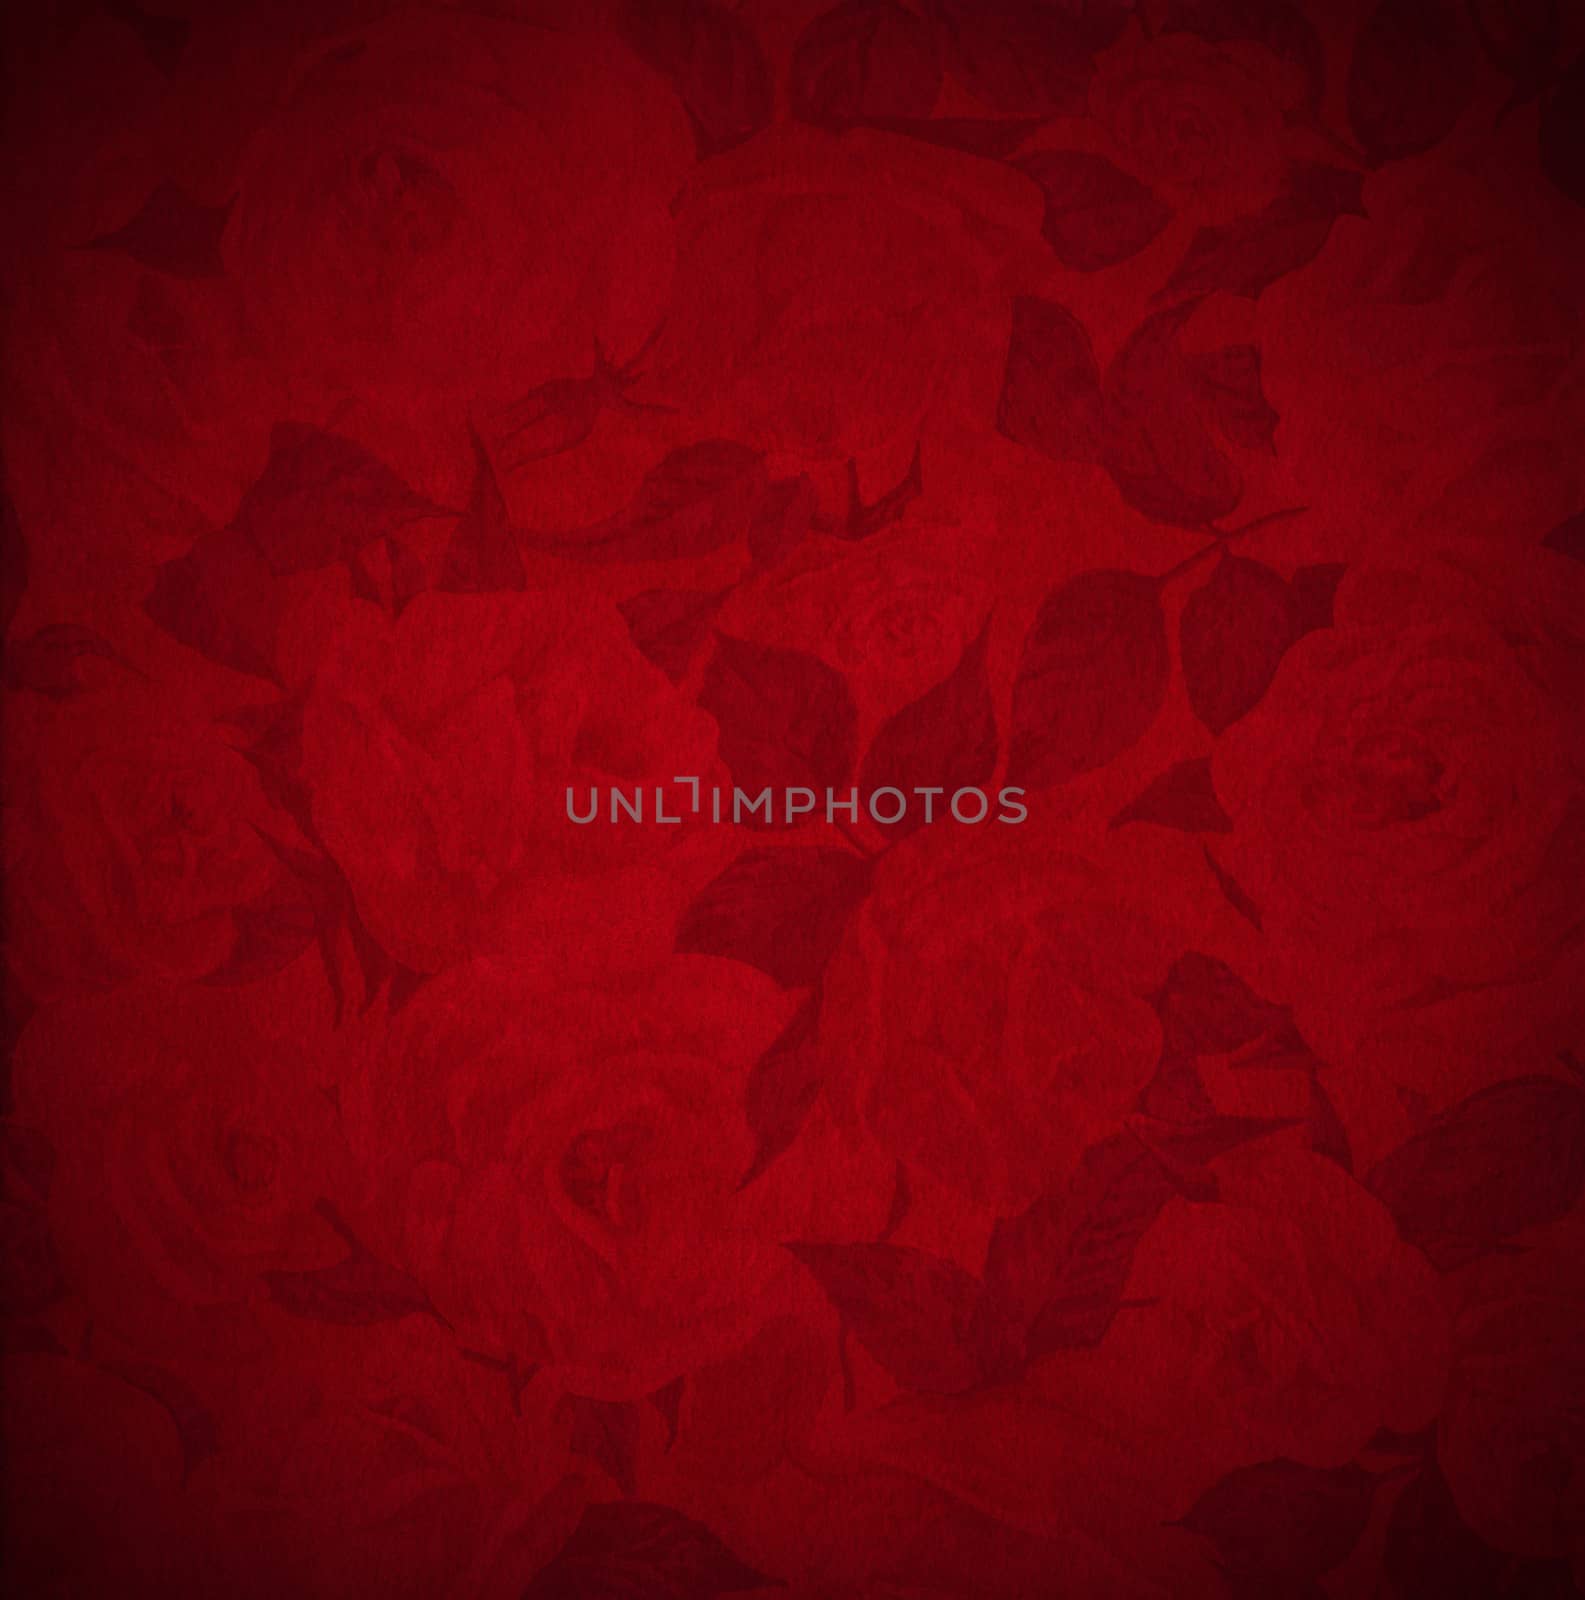 Red Velvet Background - Roses Flowers by catalby